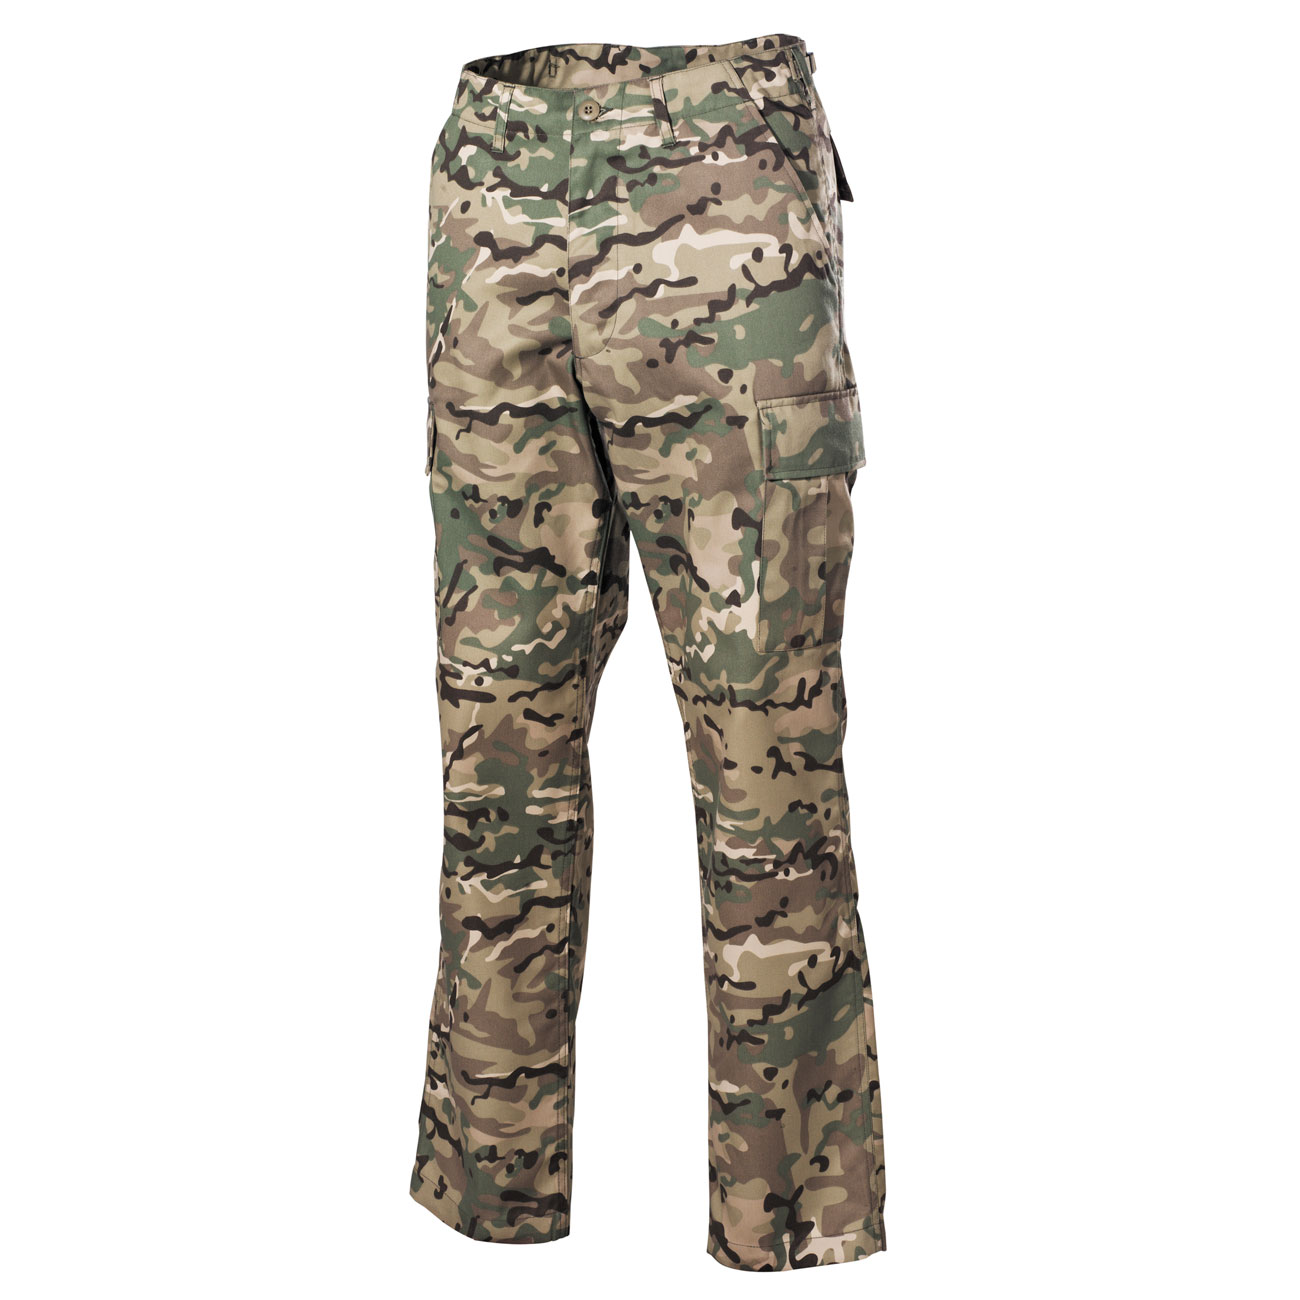 Militär Hose US MFH BDU 6 Farben desert Camouflage Tarn Kleidung A27 